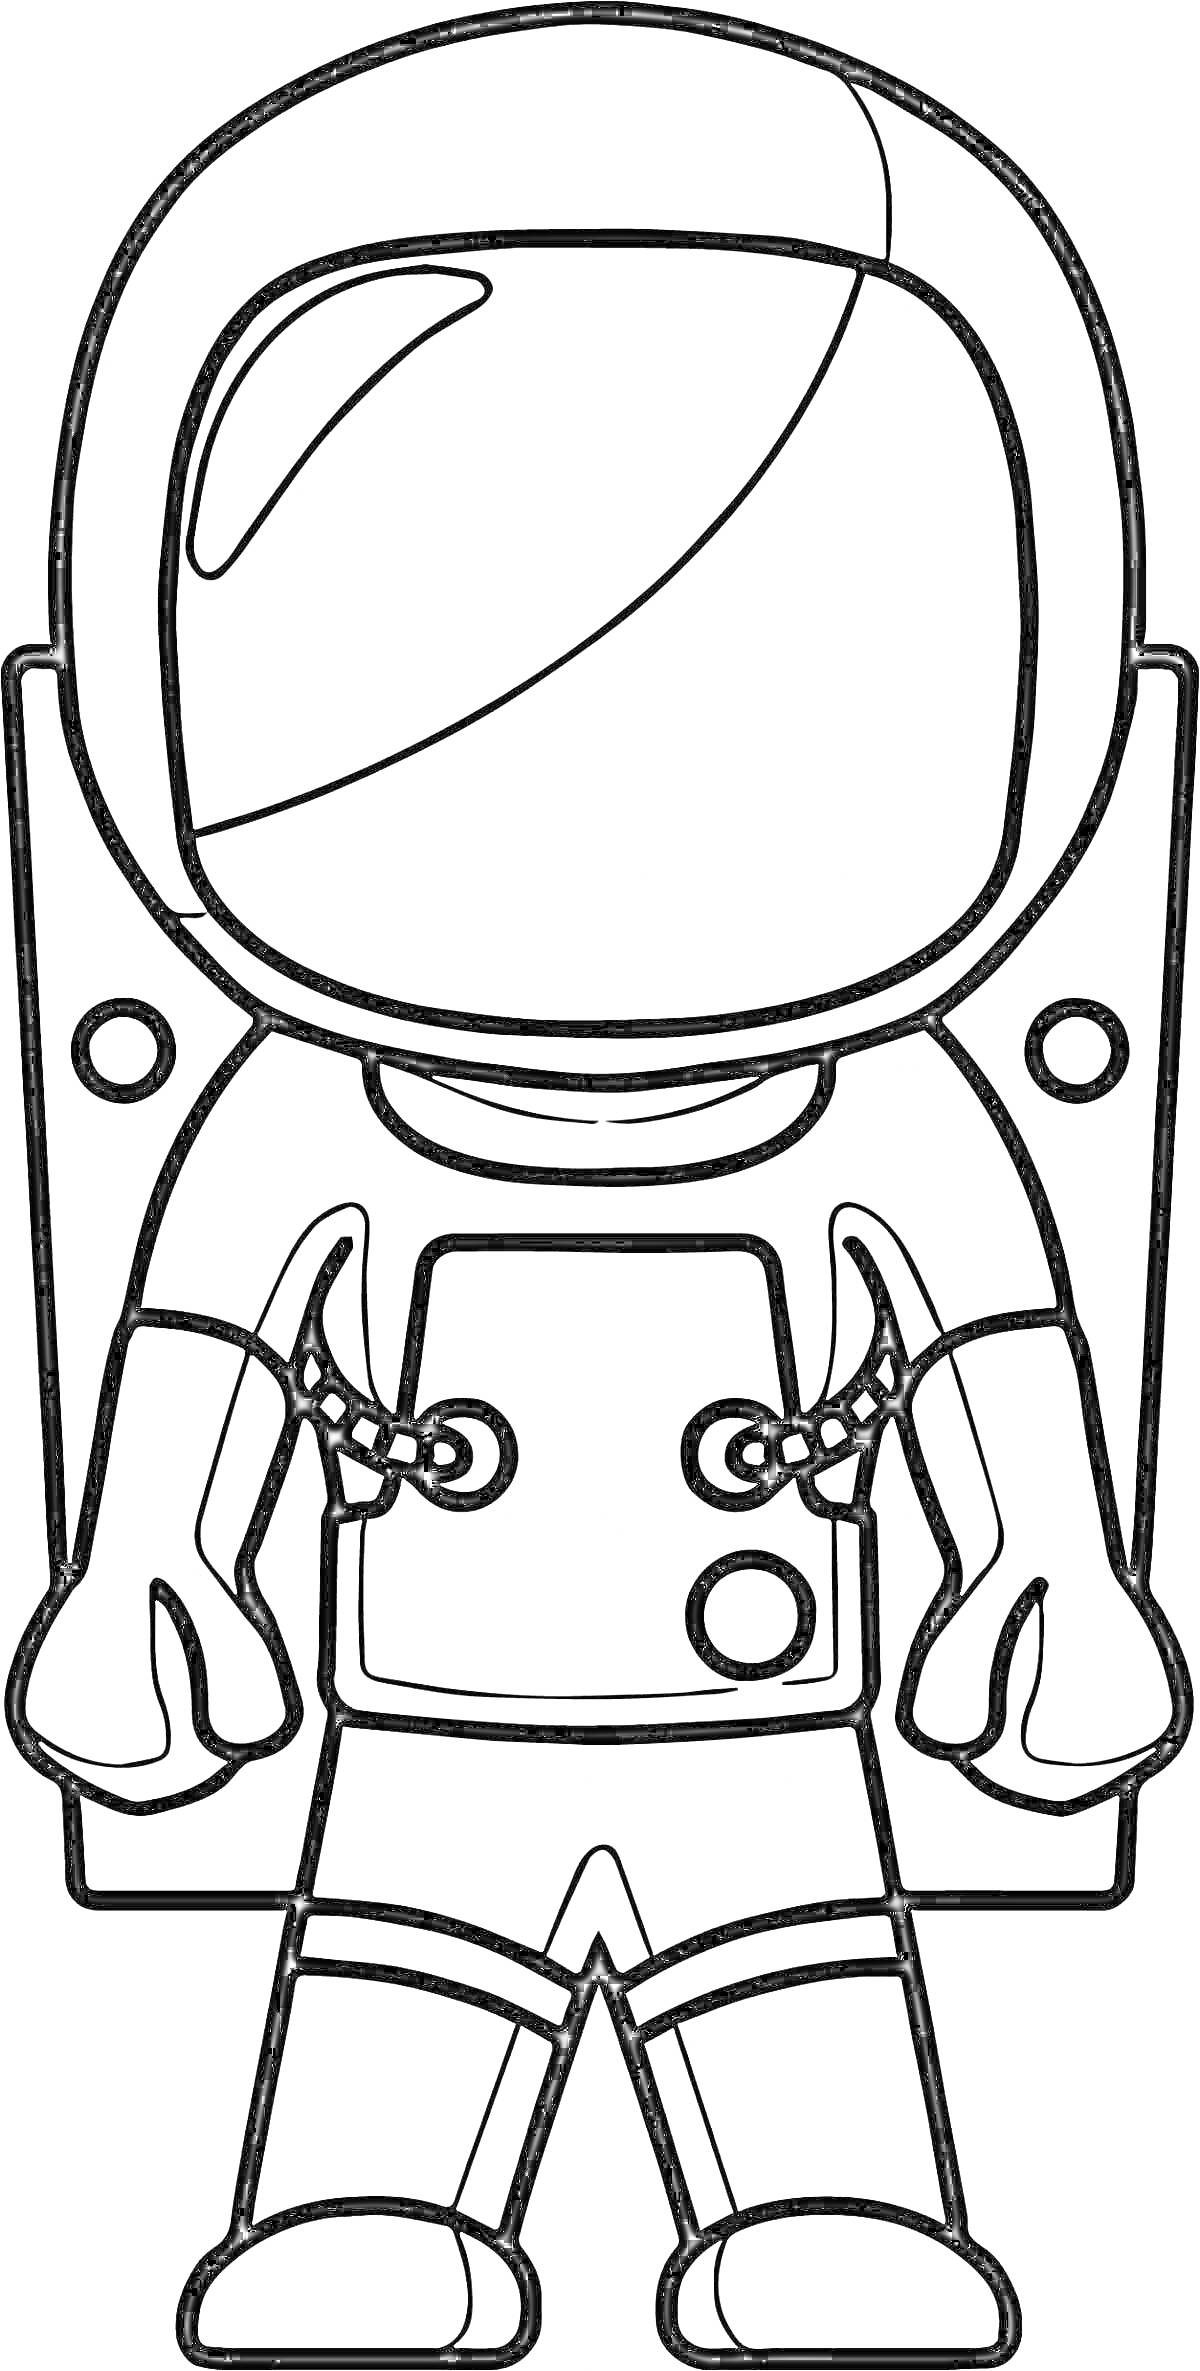 Раскраска Космонавт в скафандре с рюкзаком и шлемом